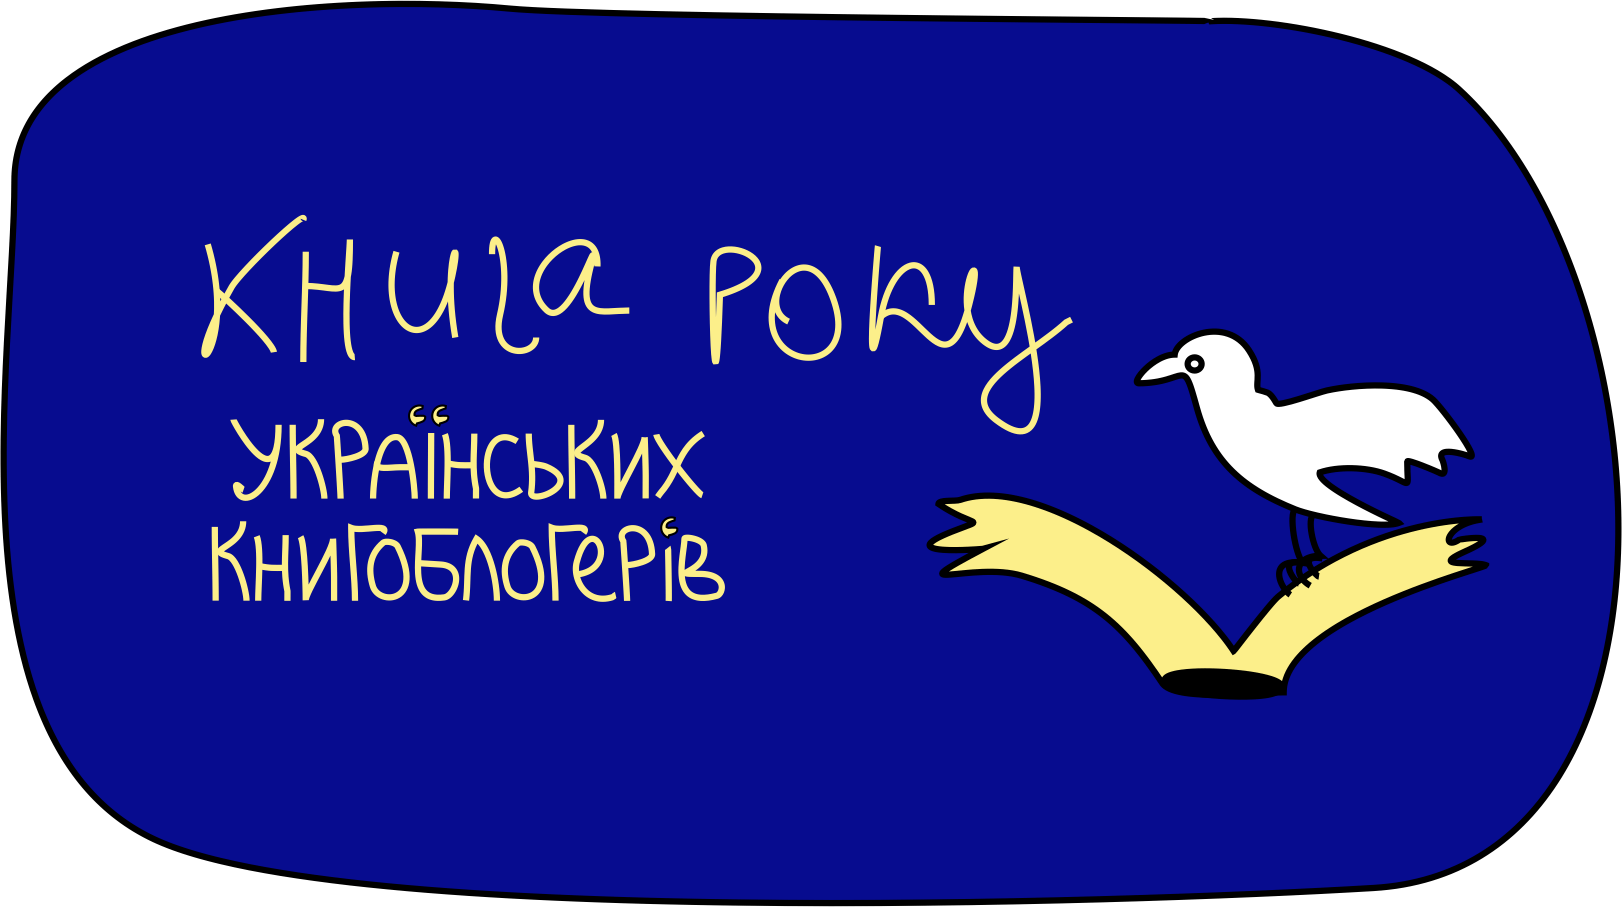 kruk - Книга року українських книгоблогерів — КРУК вперше оголосила своїх переможців